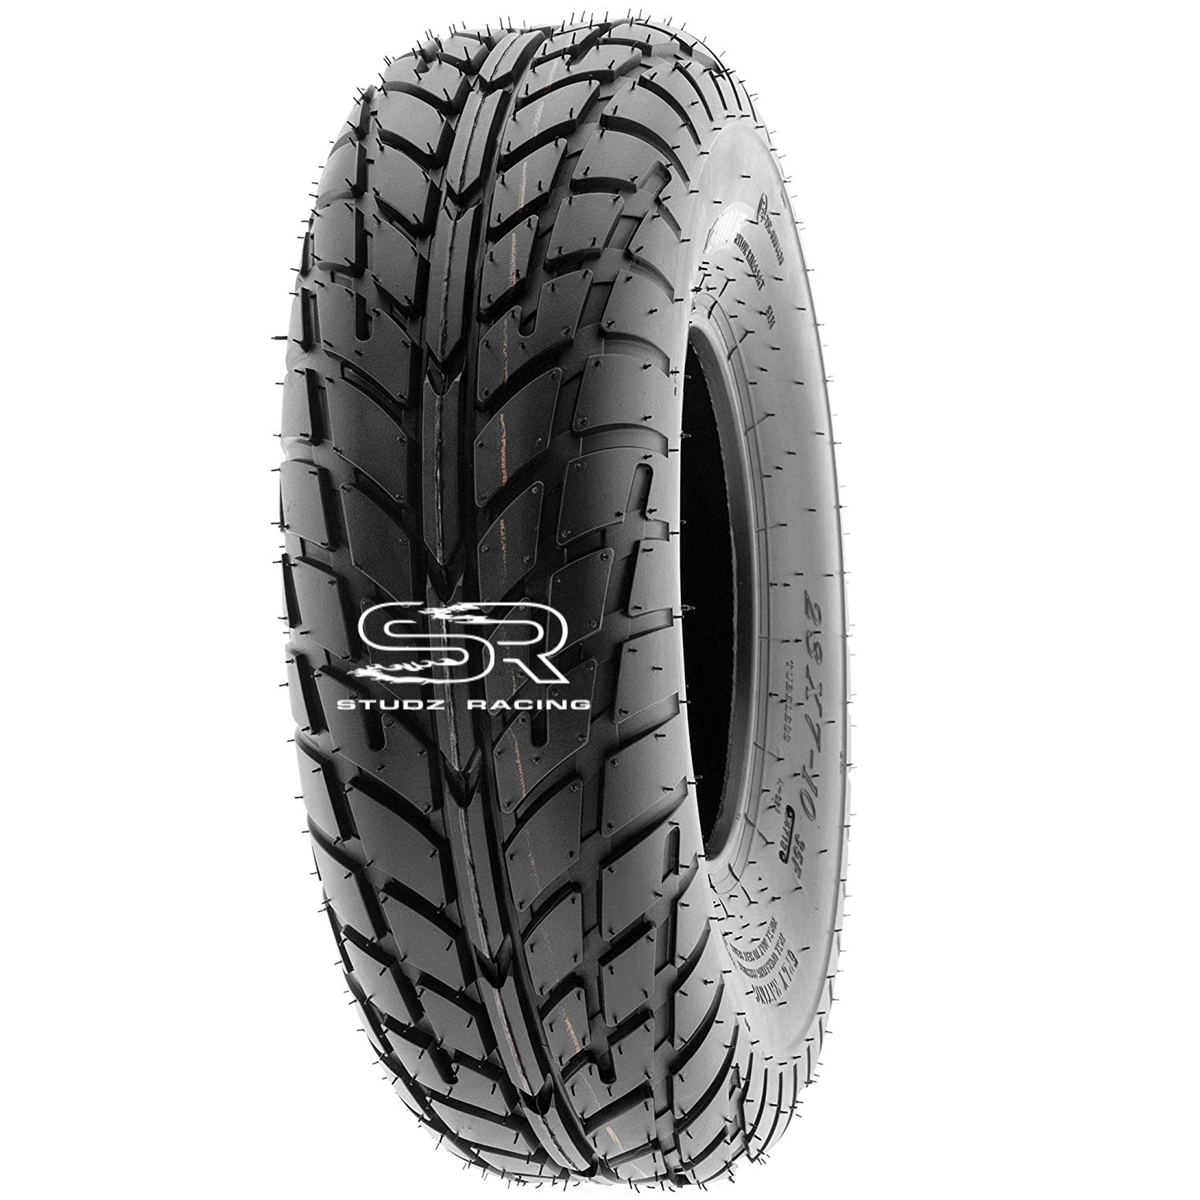 20X7-8 Baja Warrior Street Tire